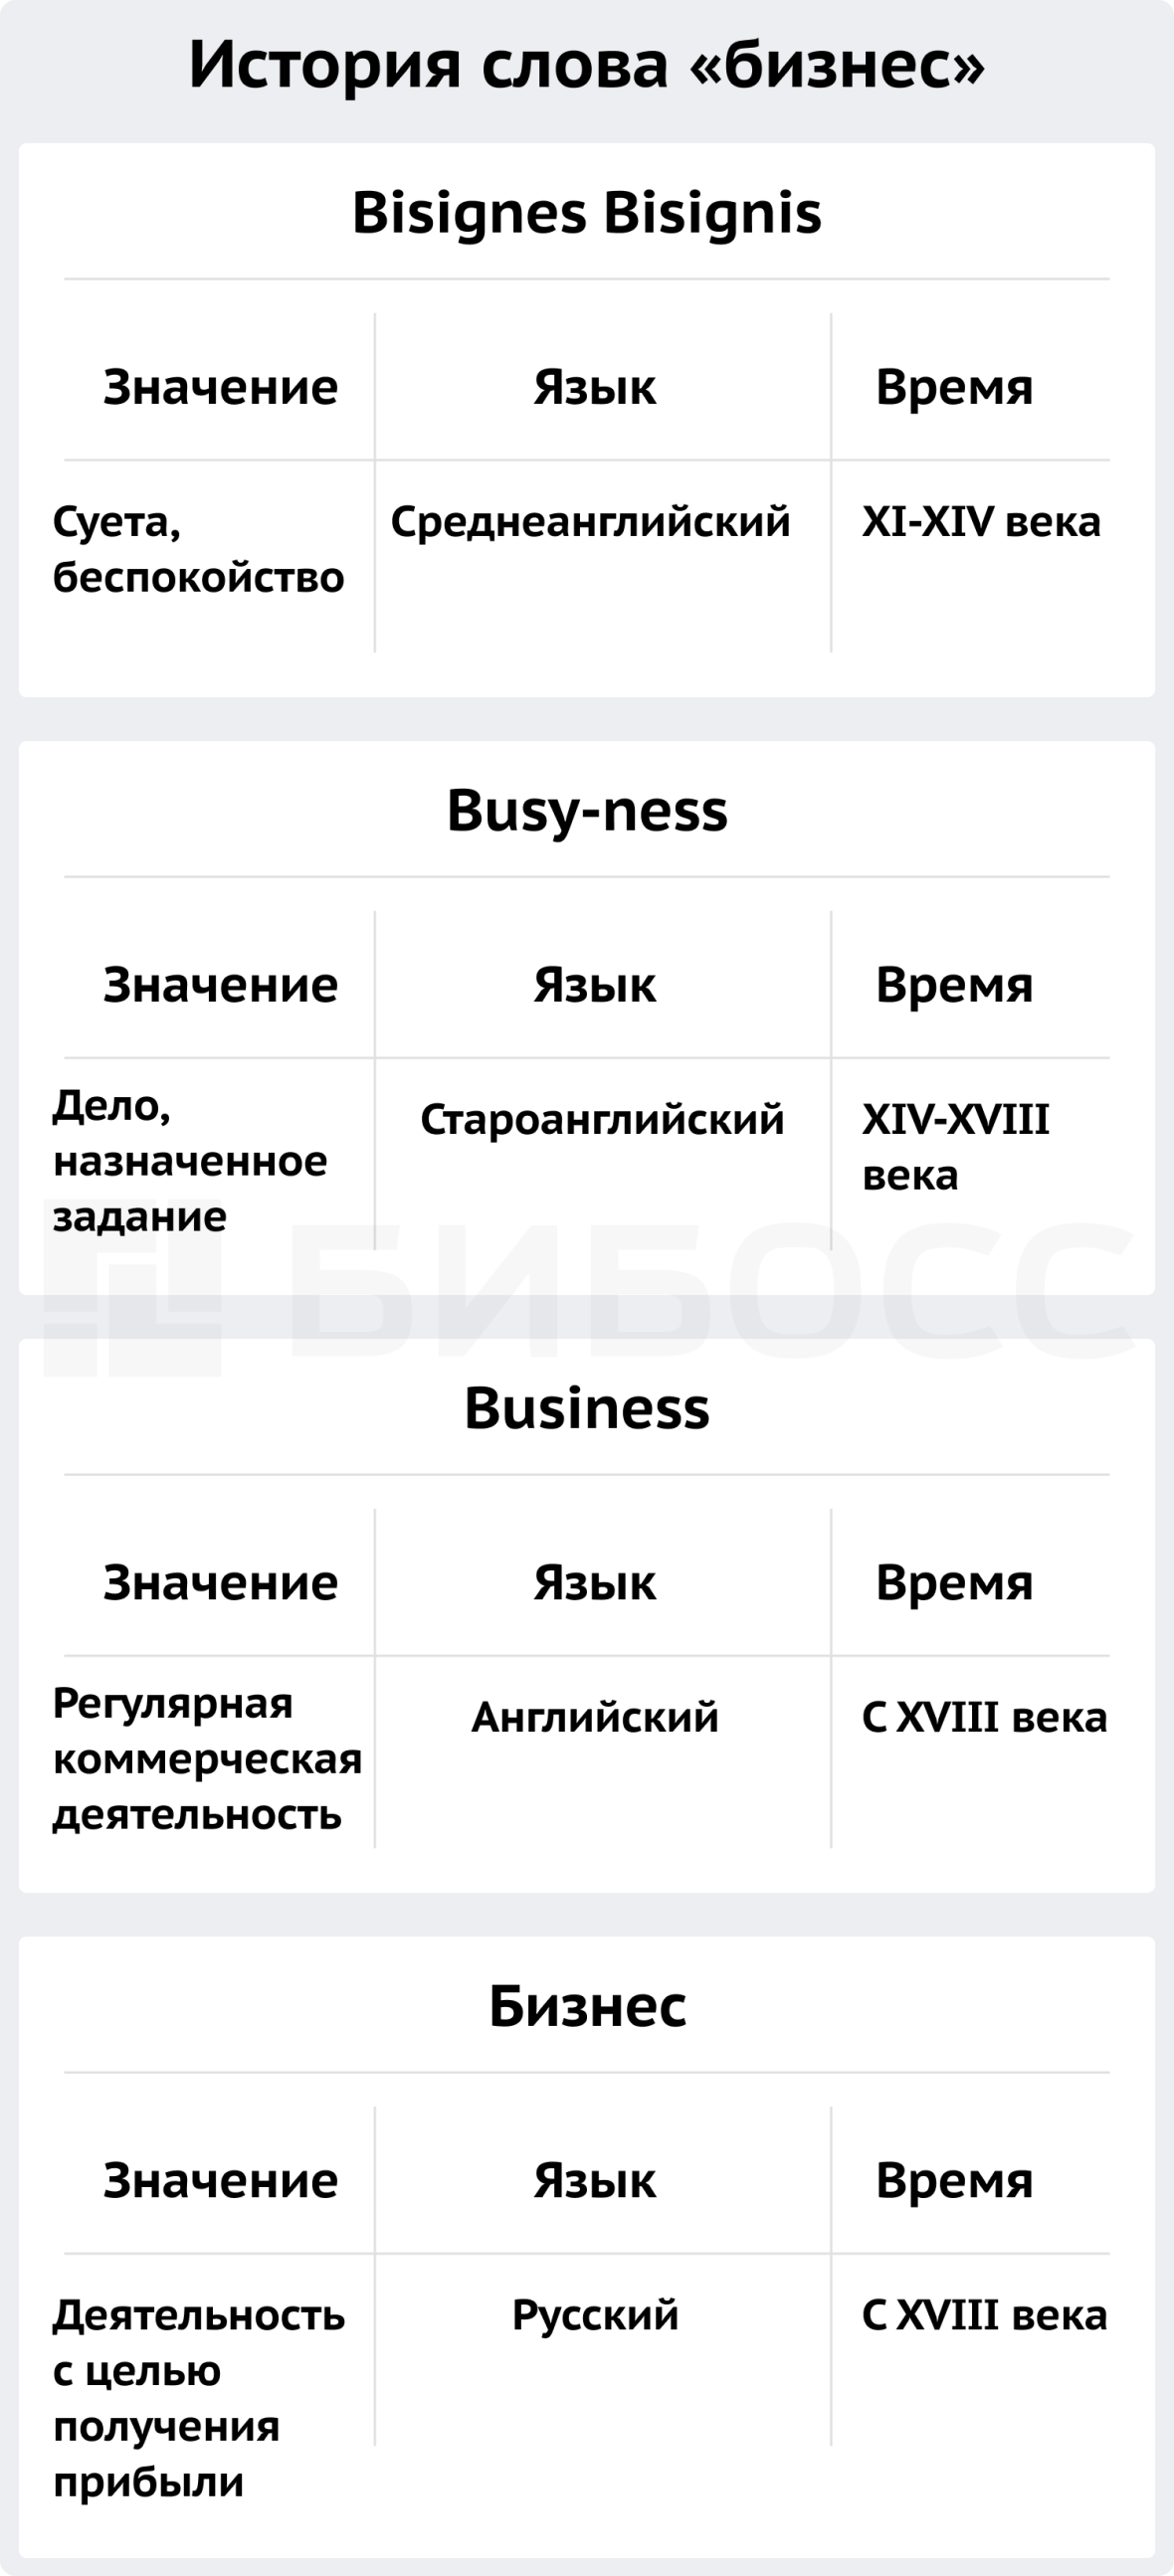 Что такое бизнес?